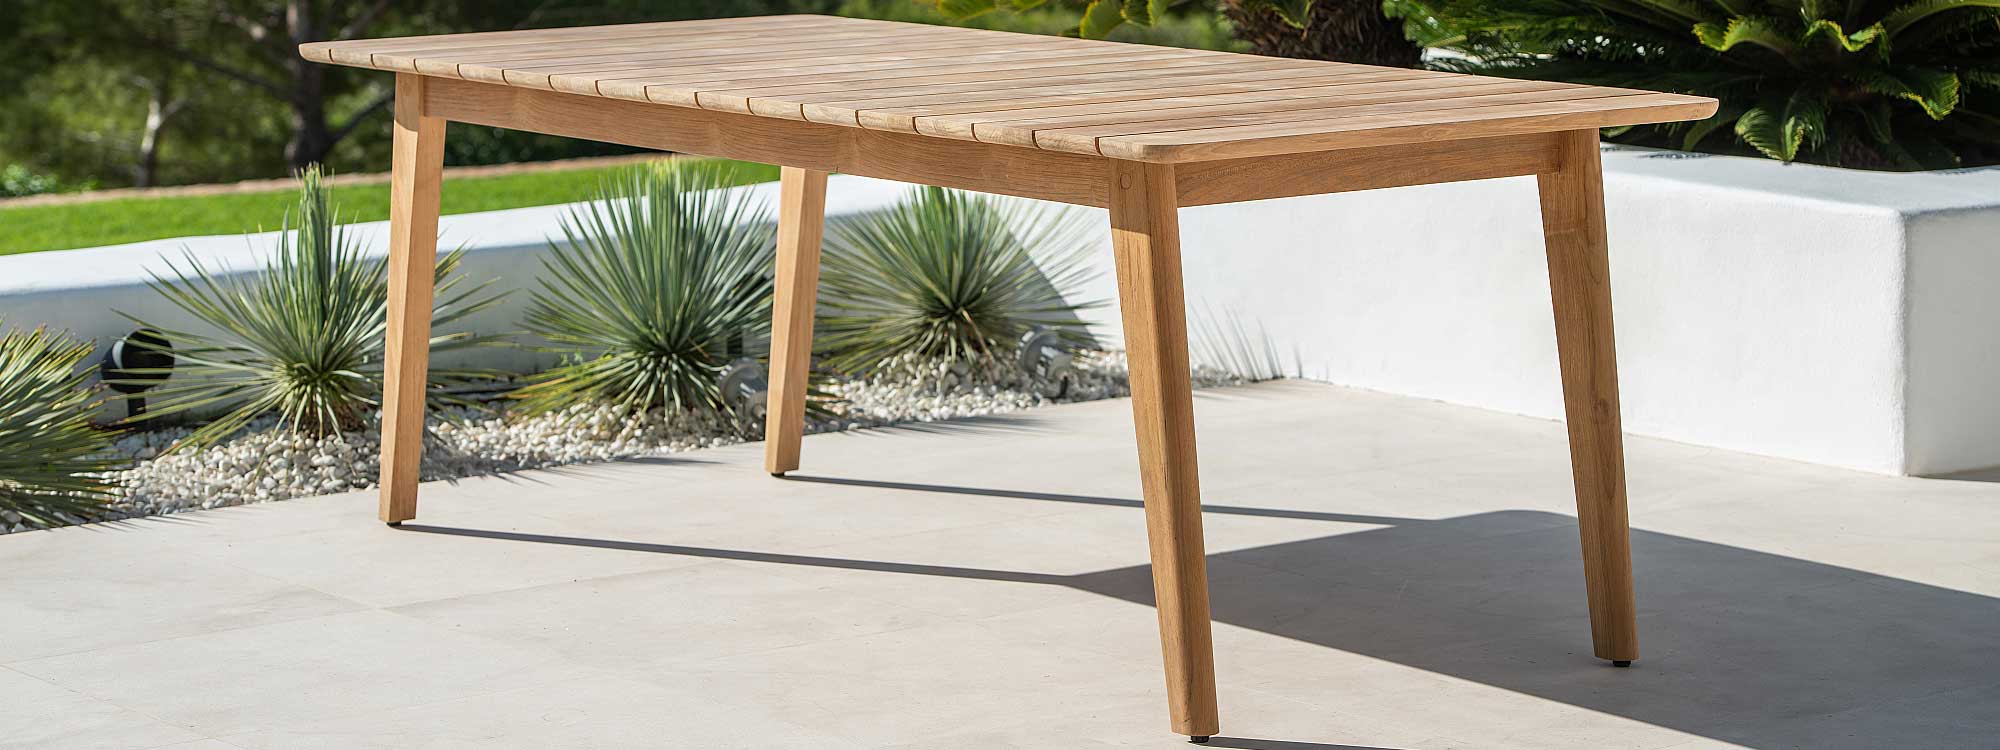 Image of Jati & Kebon Ritz modern garden table in FSC certified teak on sunny terrace